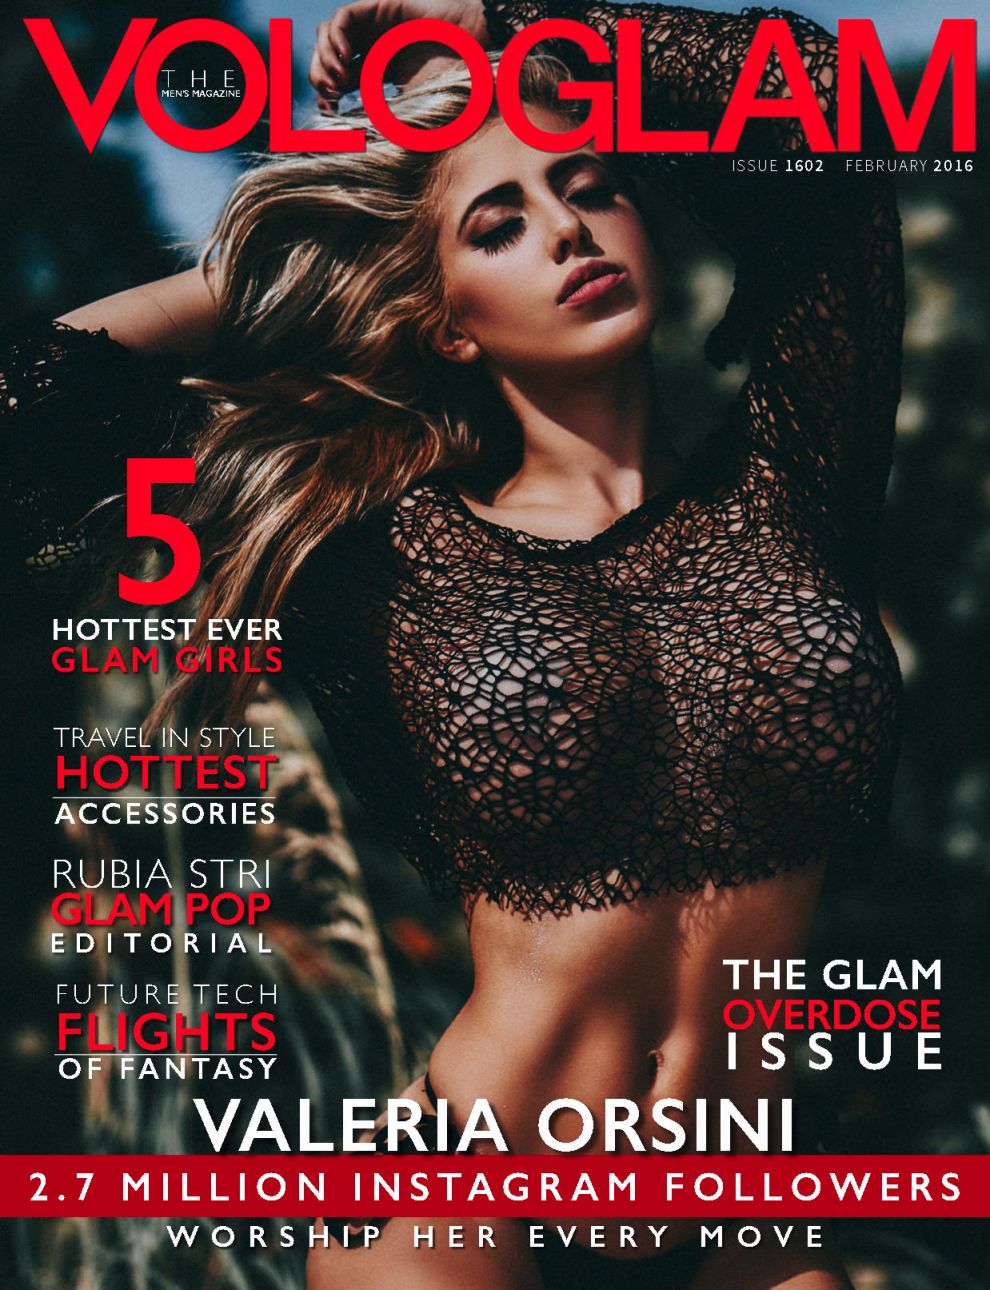 Valeria Orsini for VoloGlam Magazine